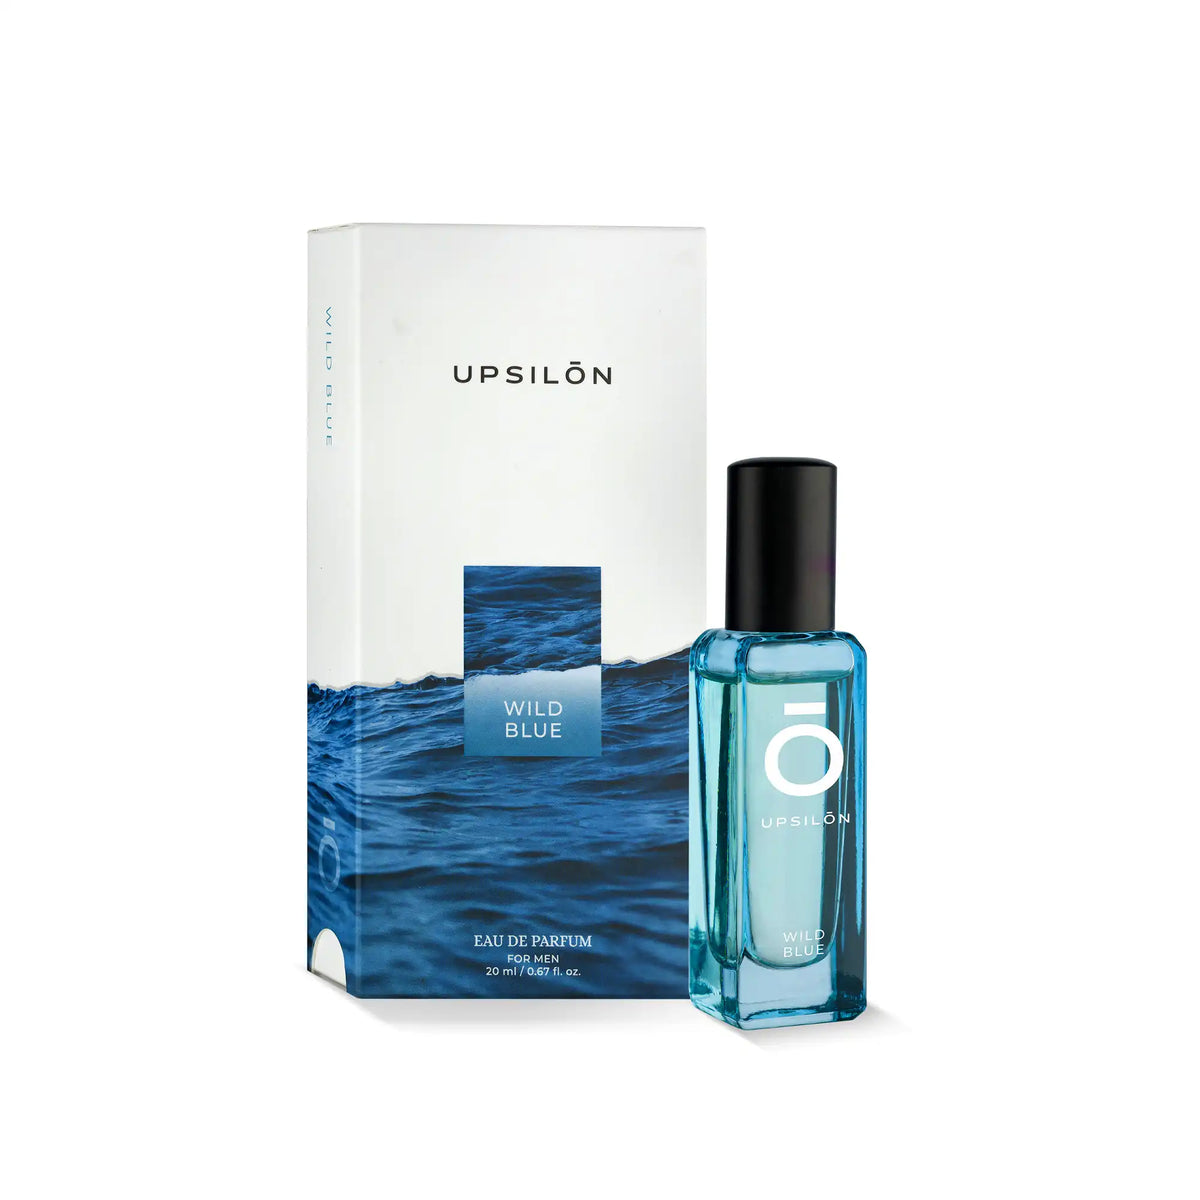 Upsilon Wild Blue Eau de Parfum for Men, 20 ml/0.67 fl. oz.